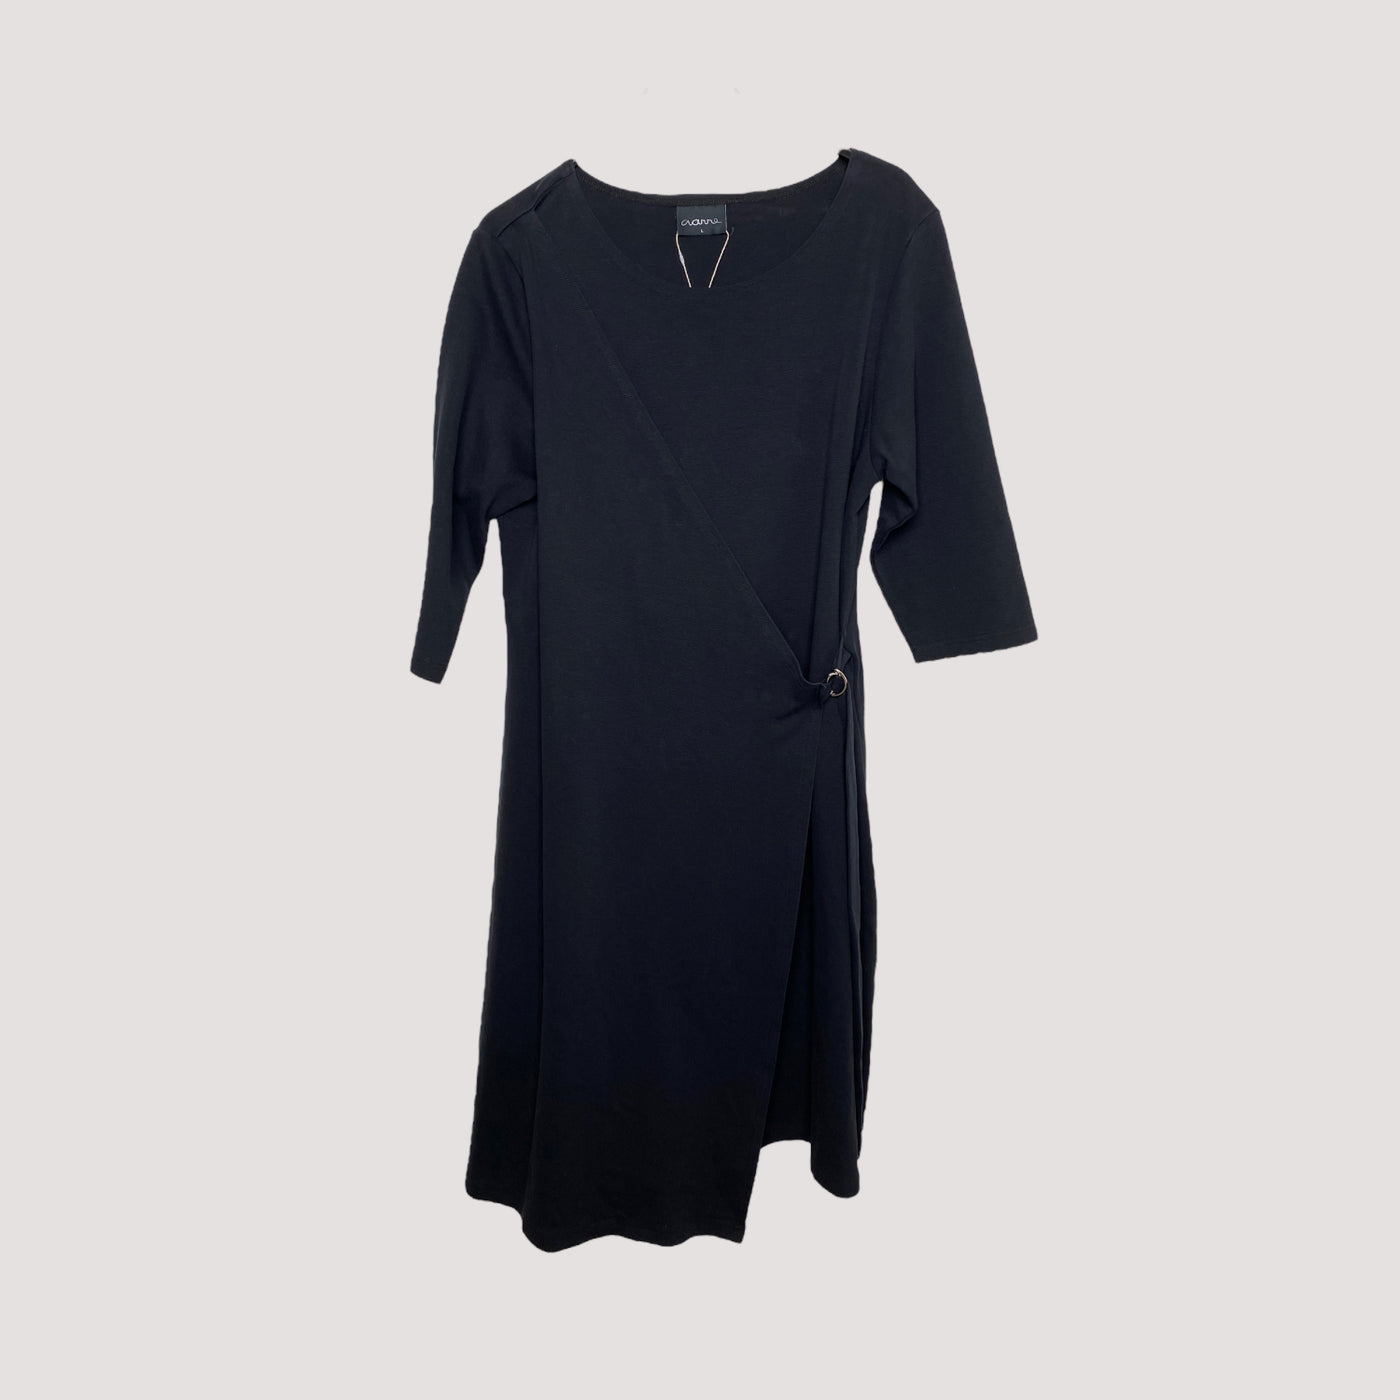 Aarre dress, black | women L